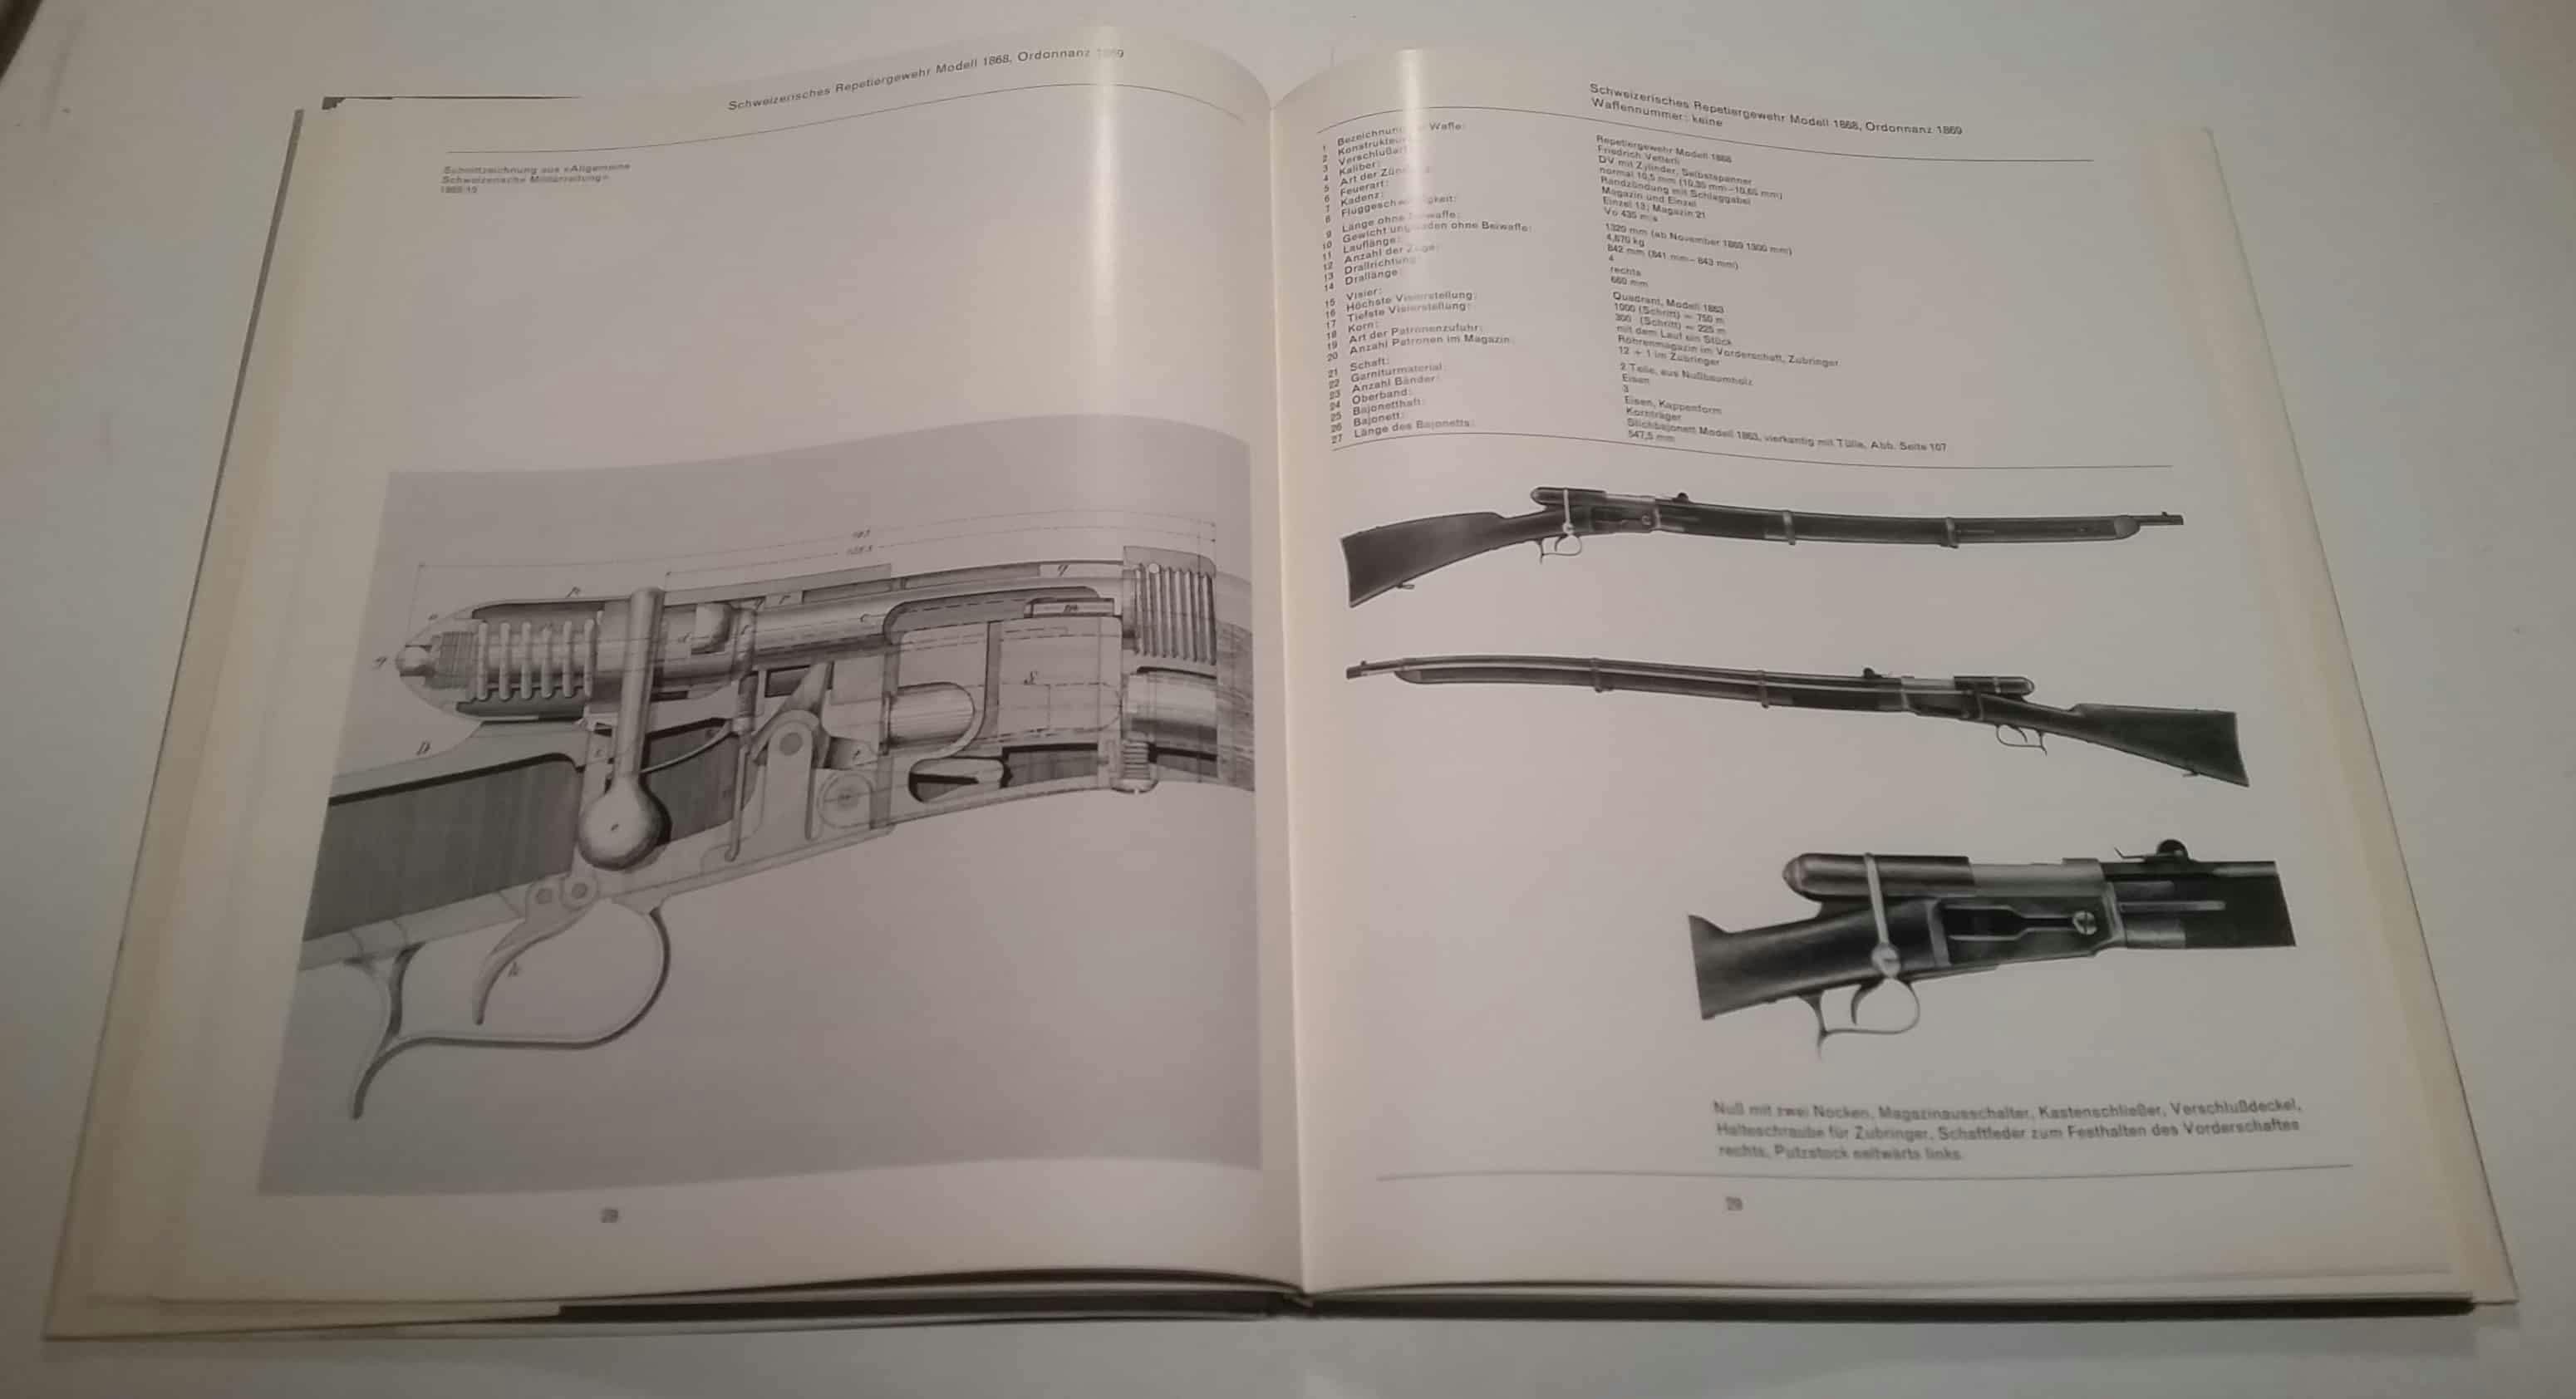 Schweizerisches Repetiergewehr Modell 1868 mit Schnittzeichnung.